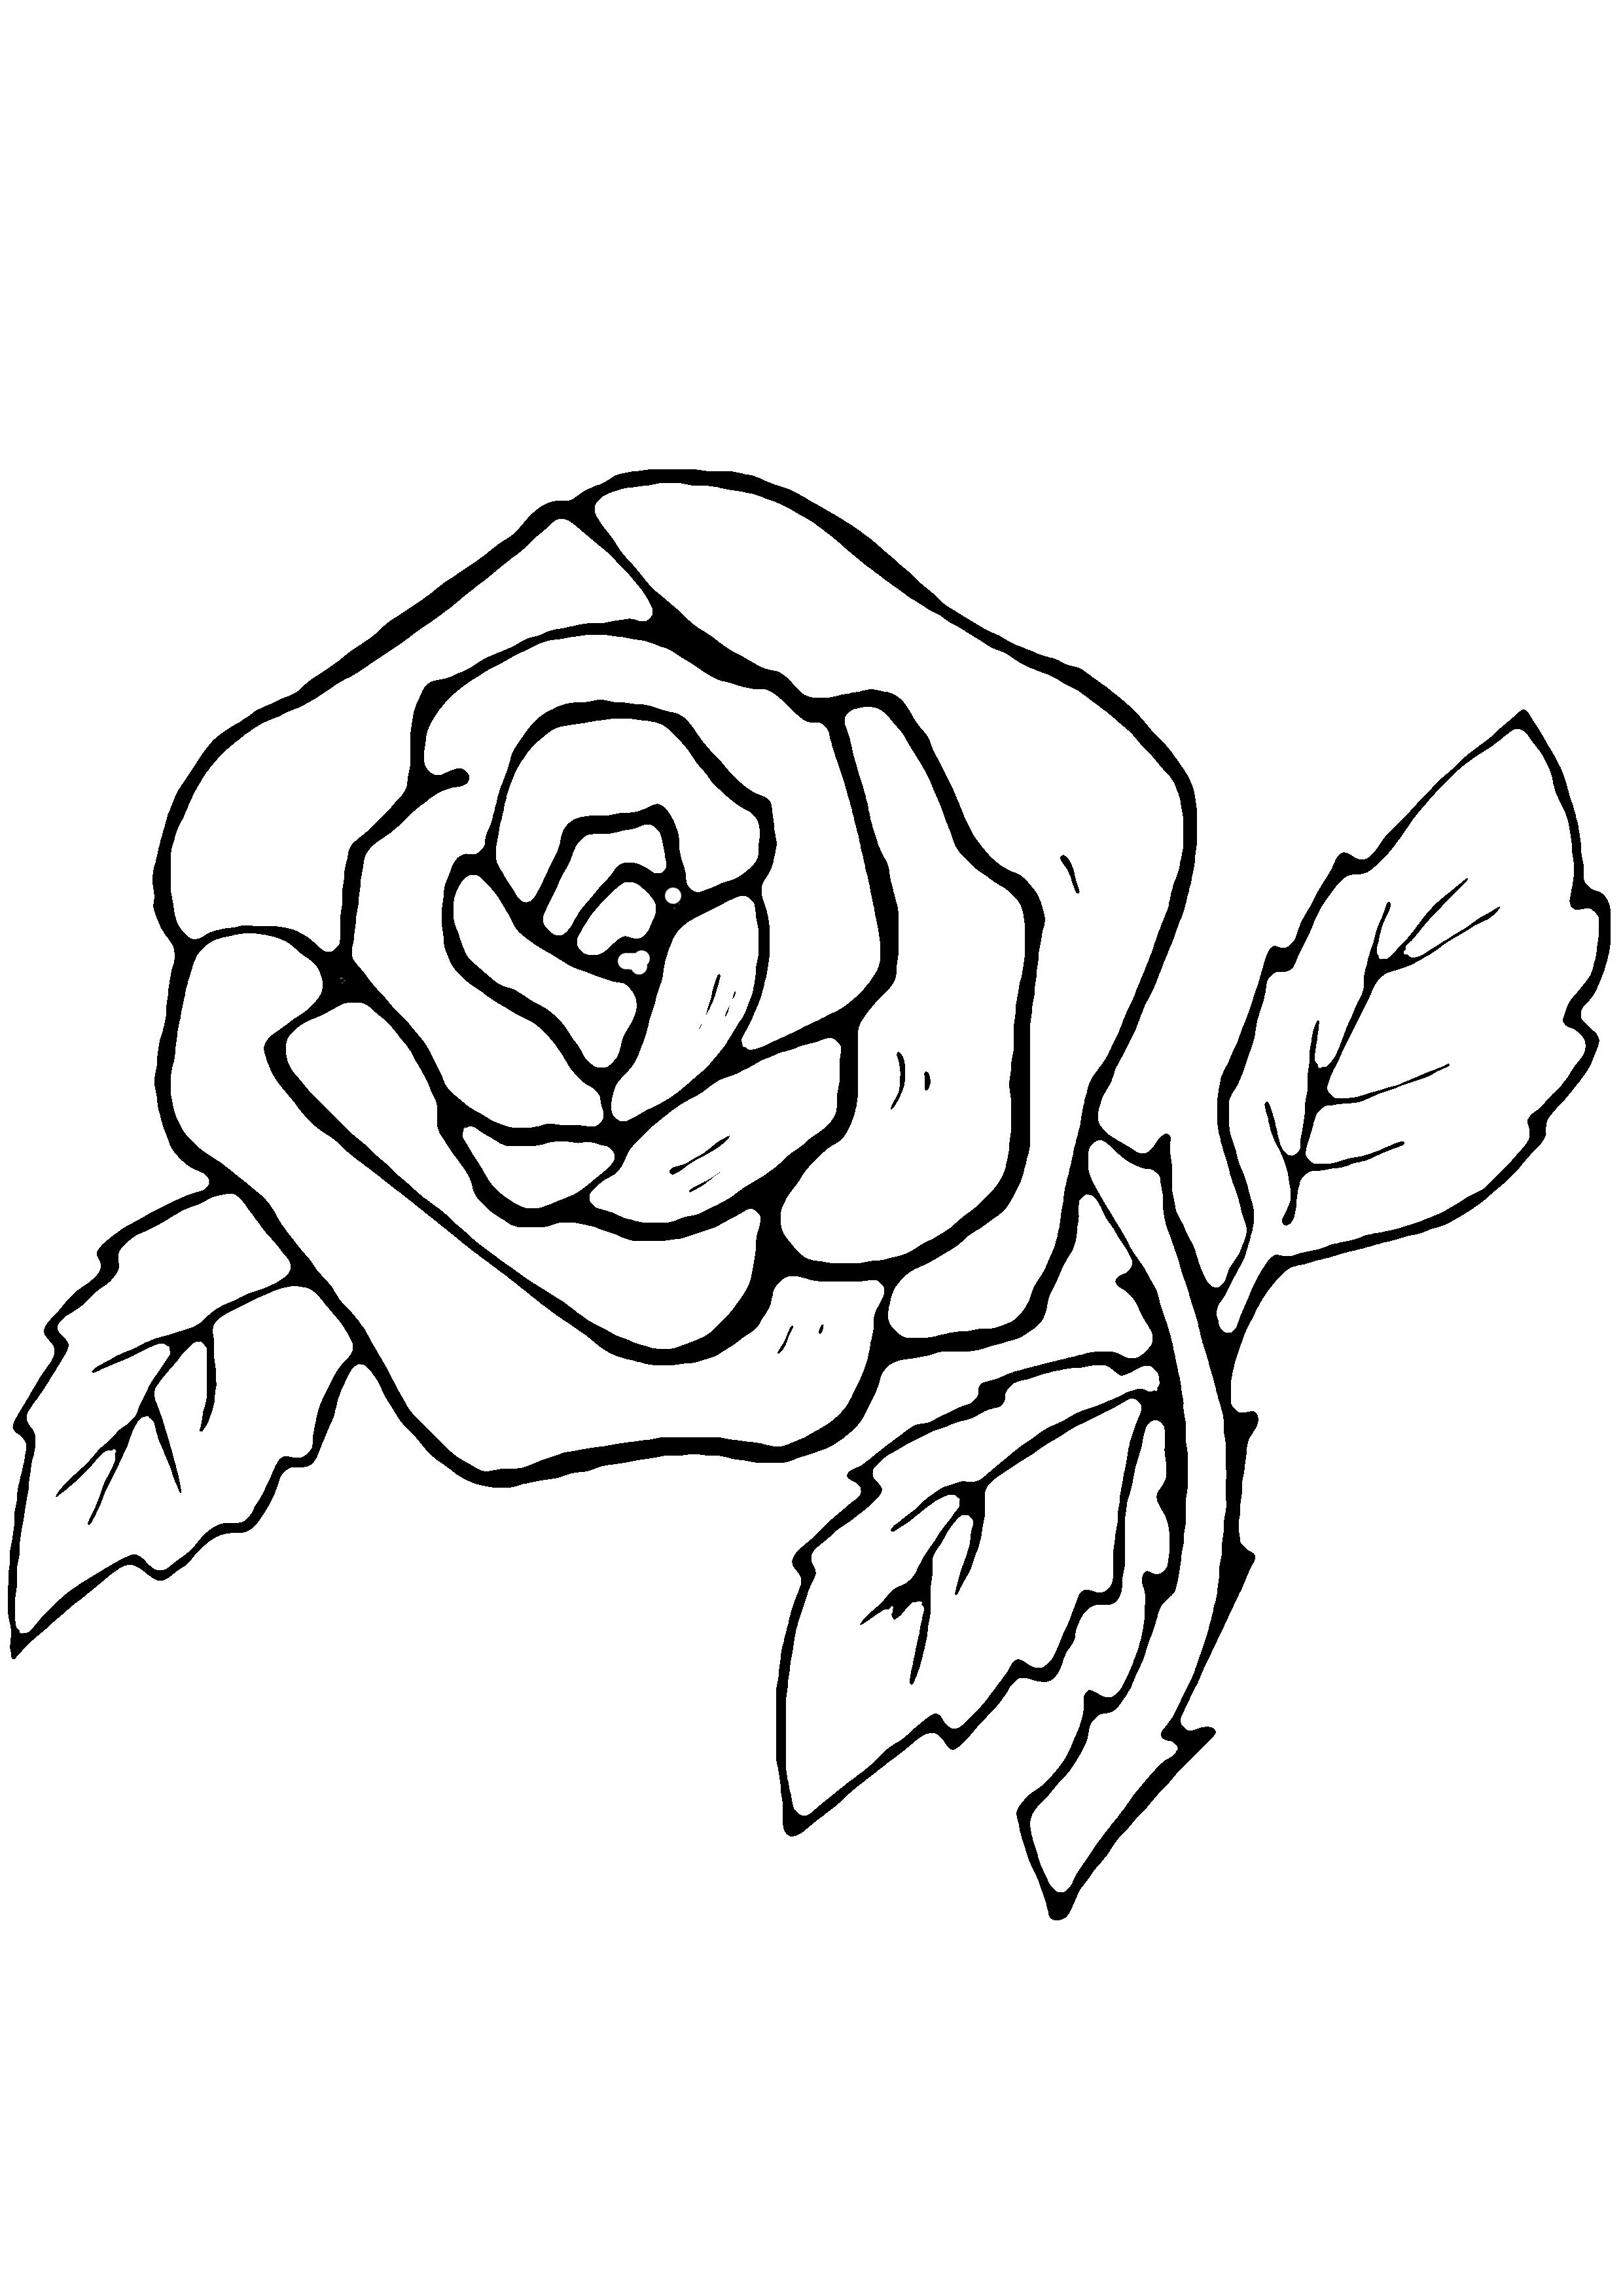 Rose 07